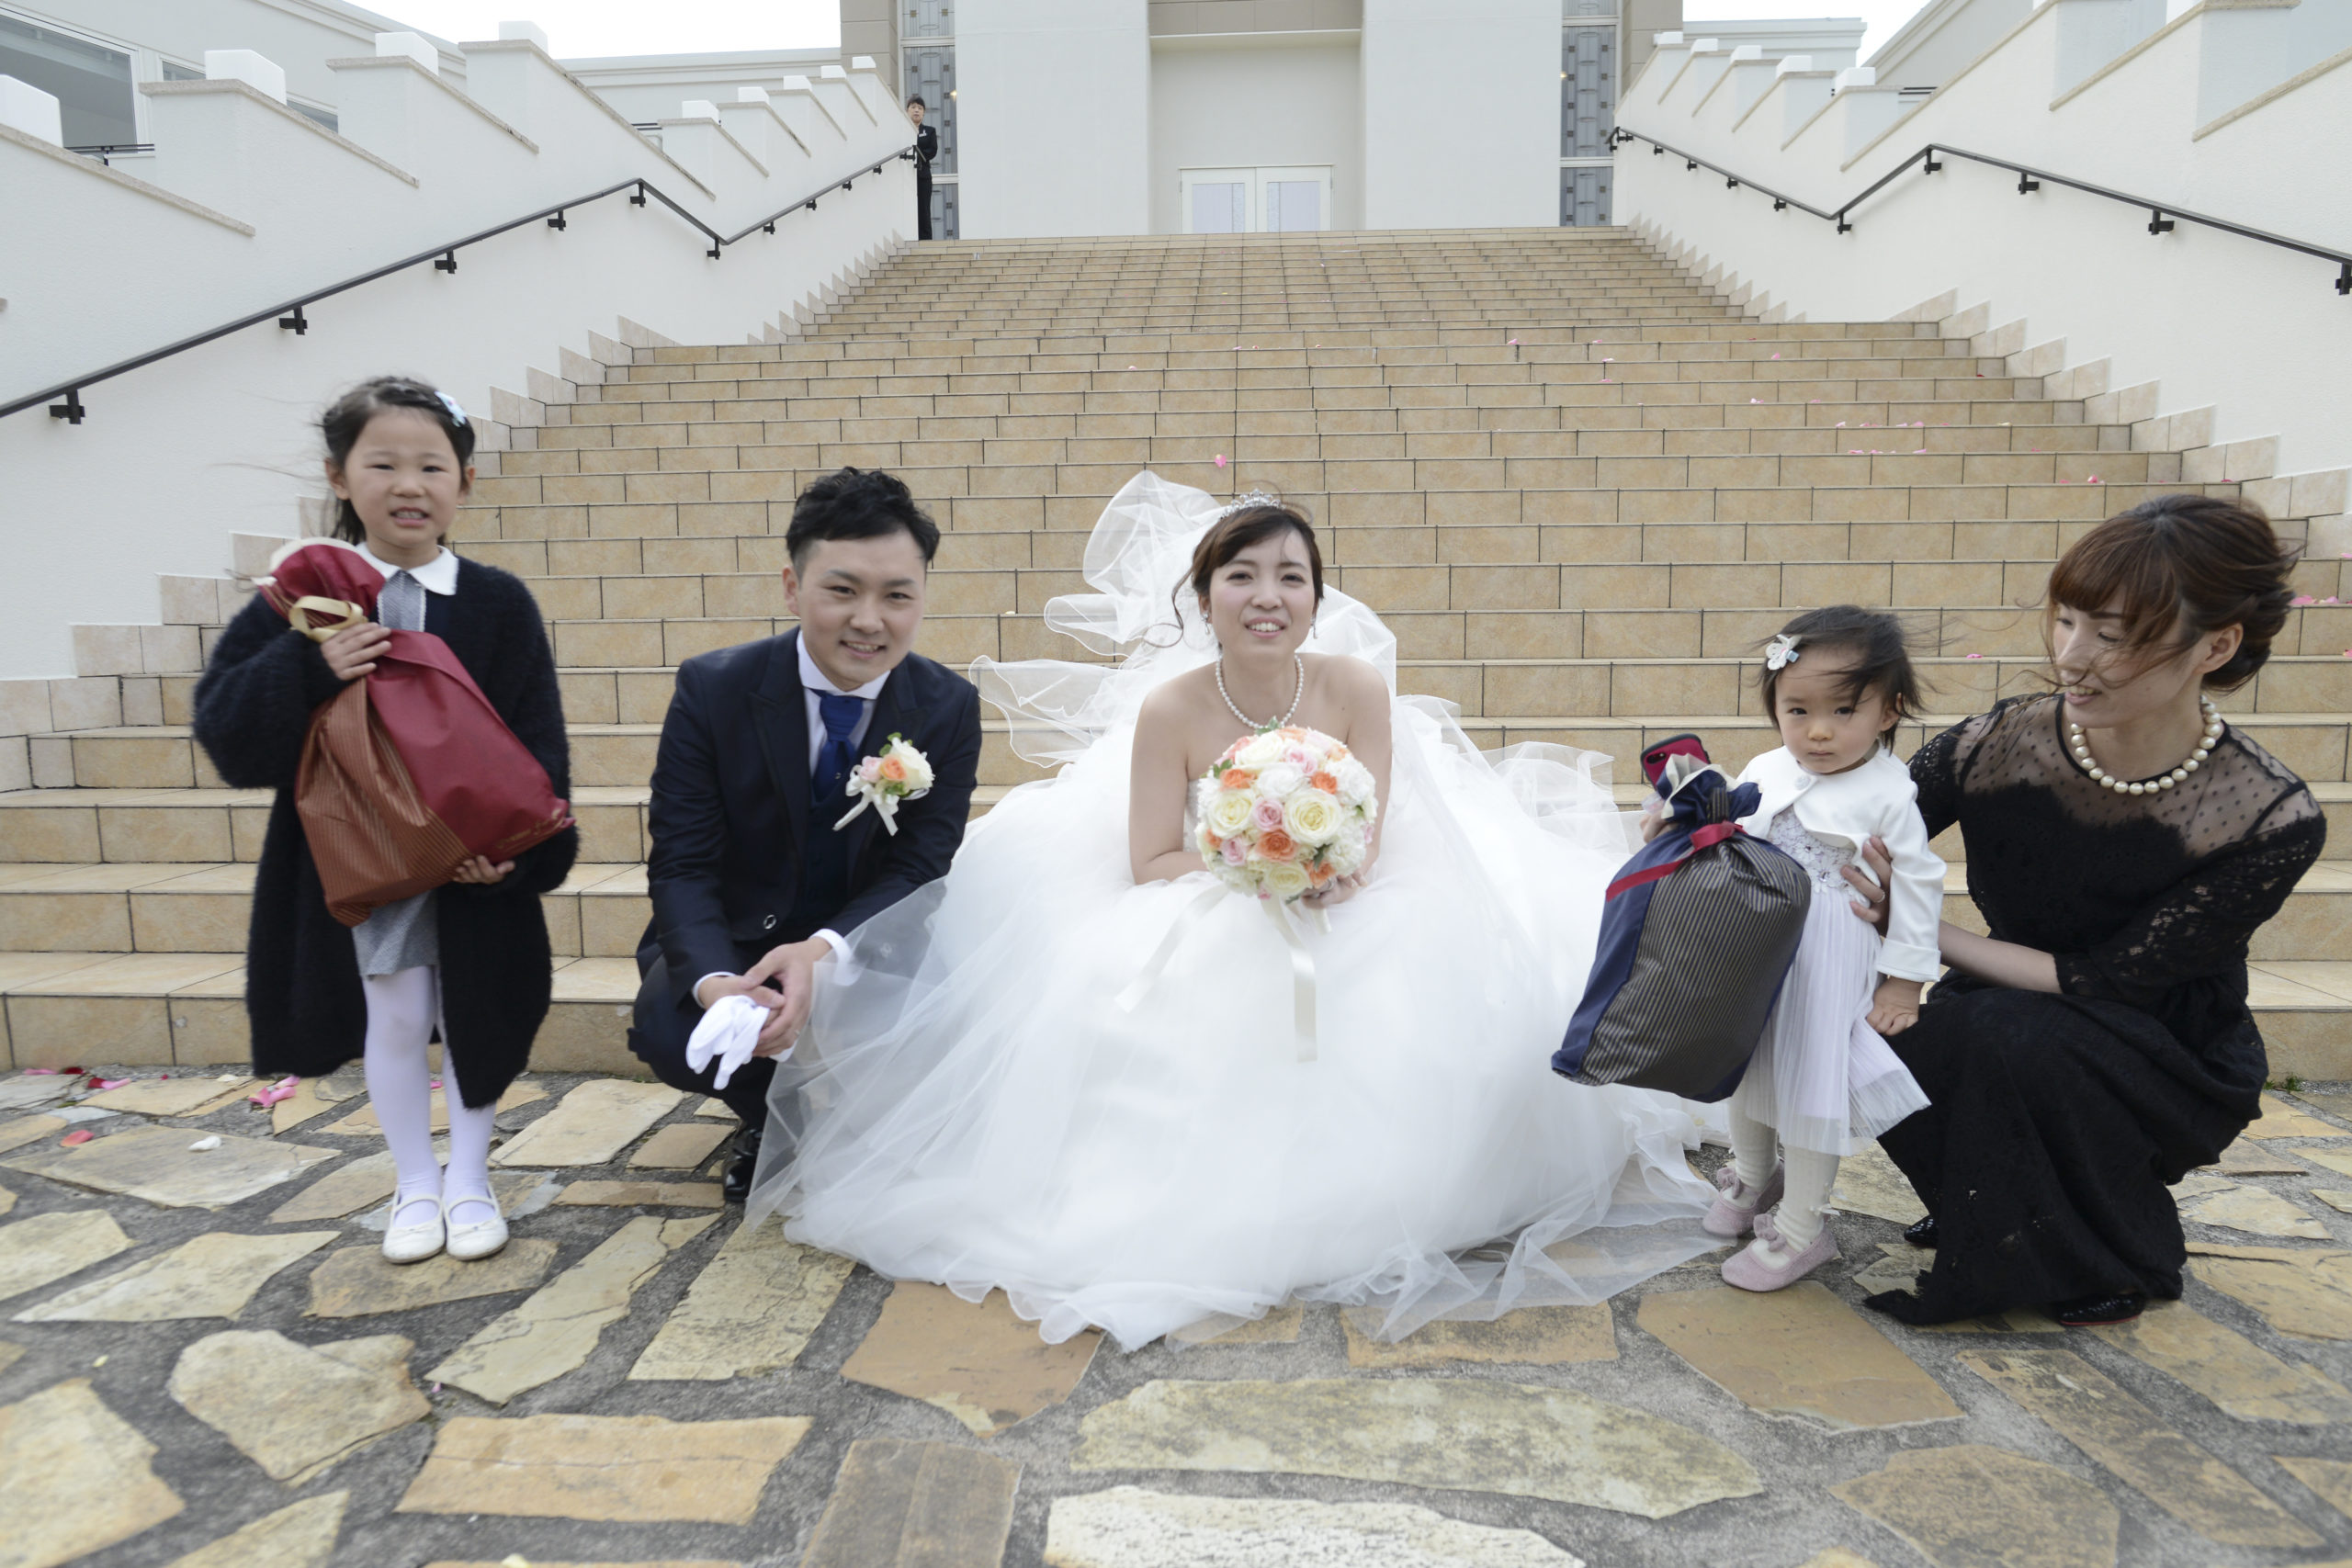 徳島市の結婚式場ブランアンジュの大階段でゲストと記念写真を撮る新郎新婦様